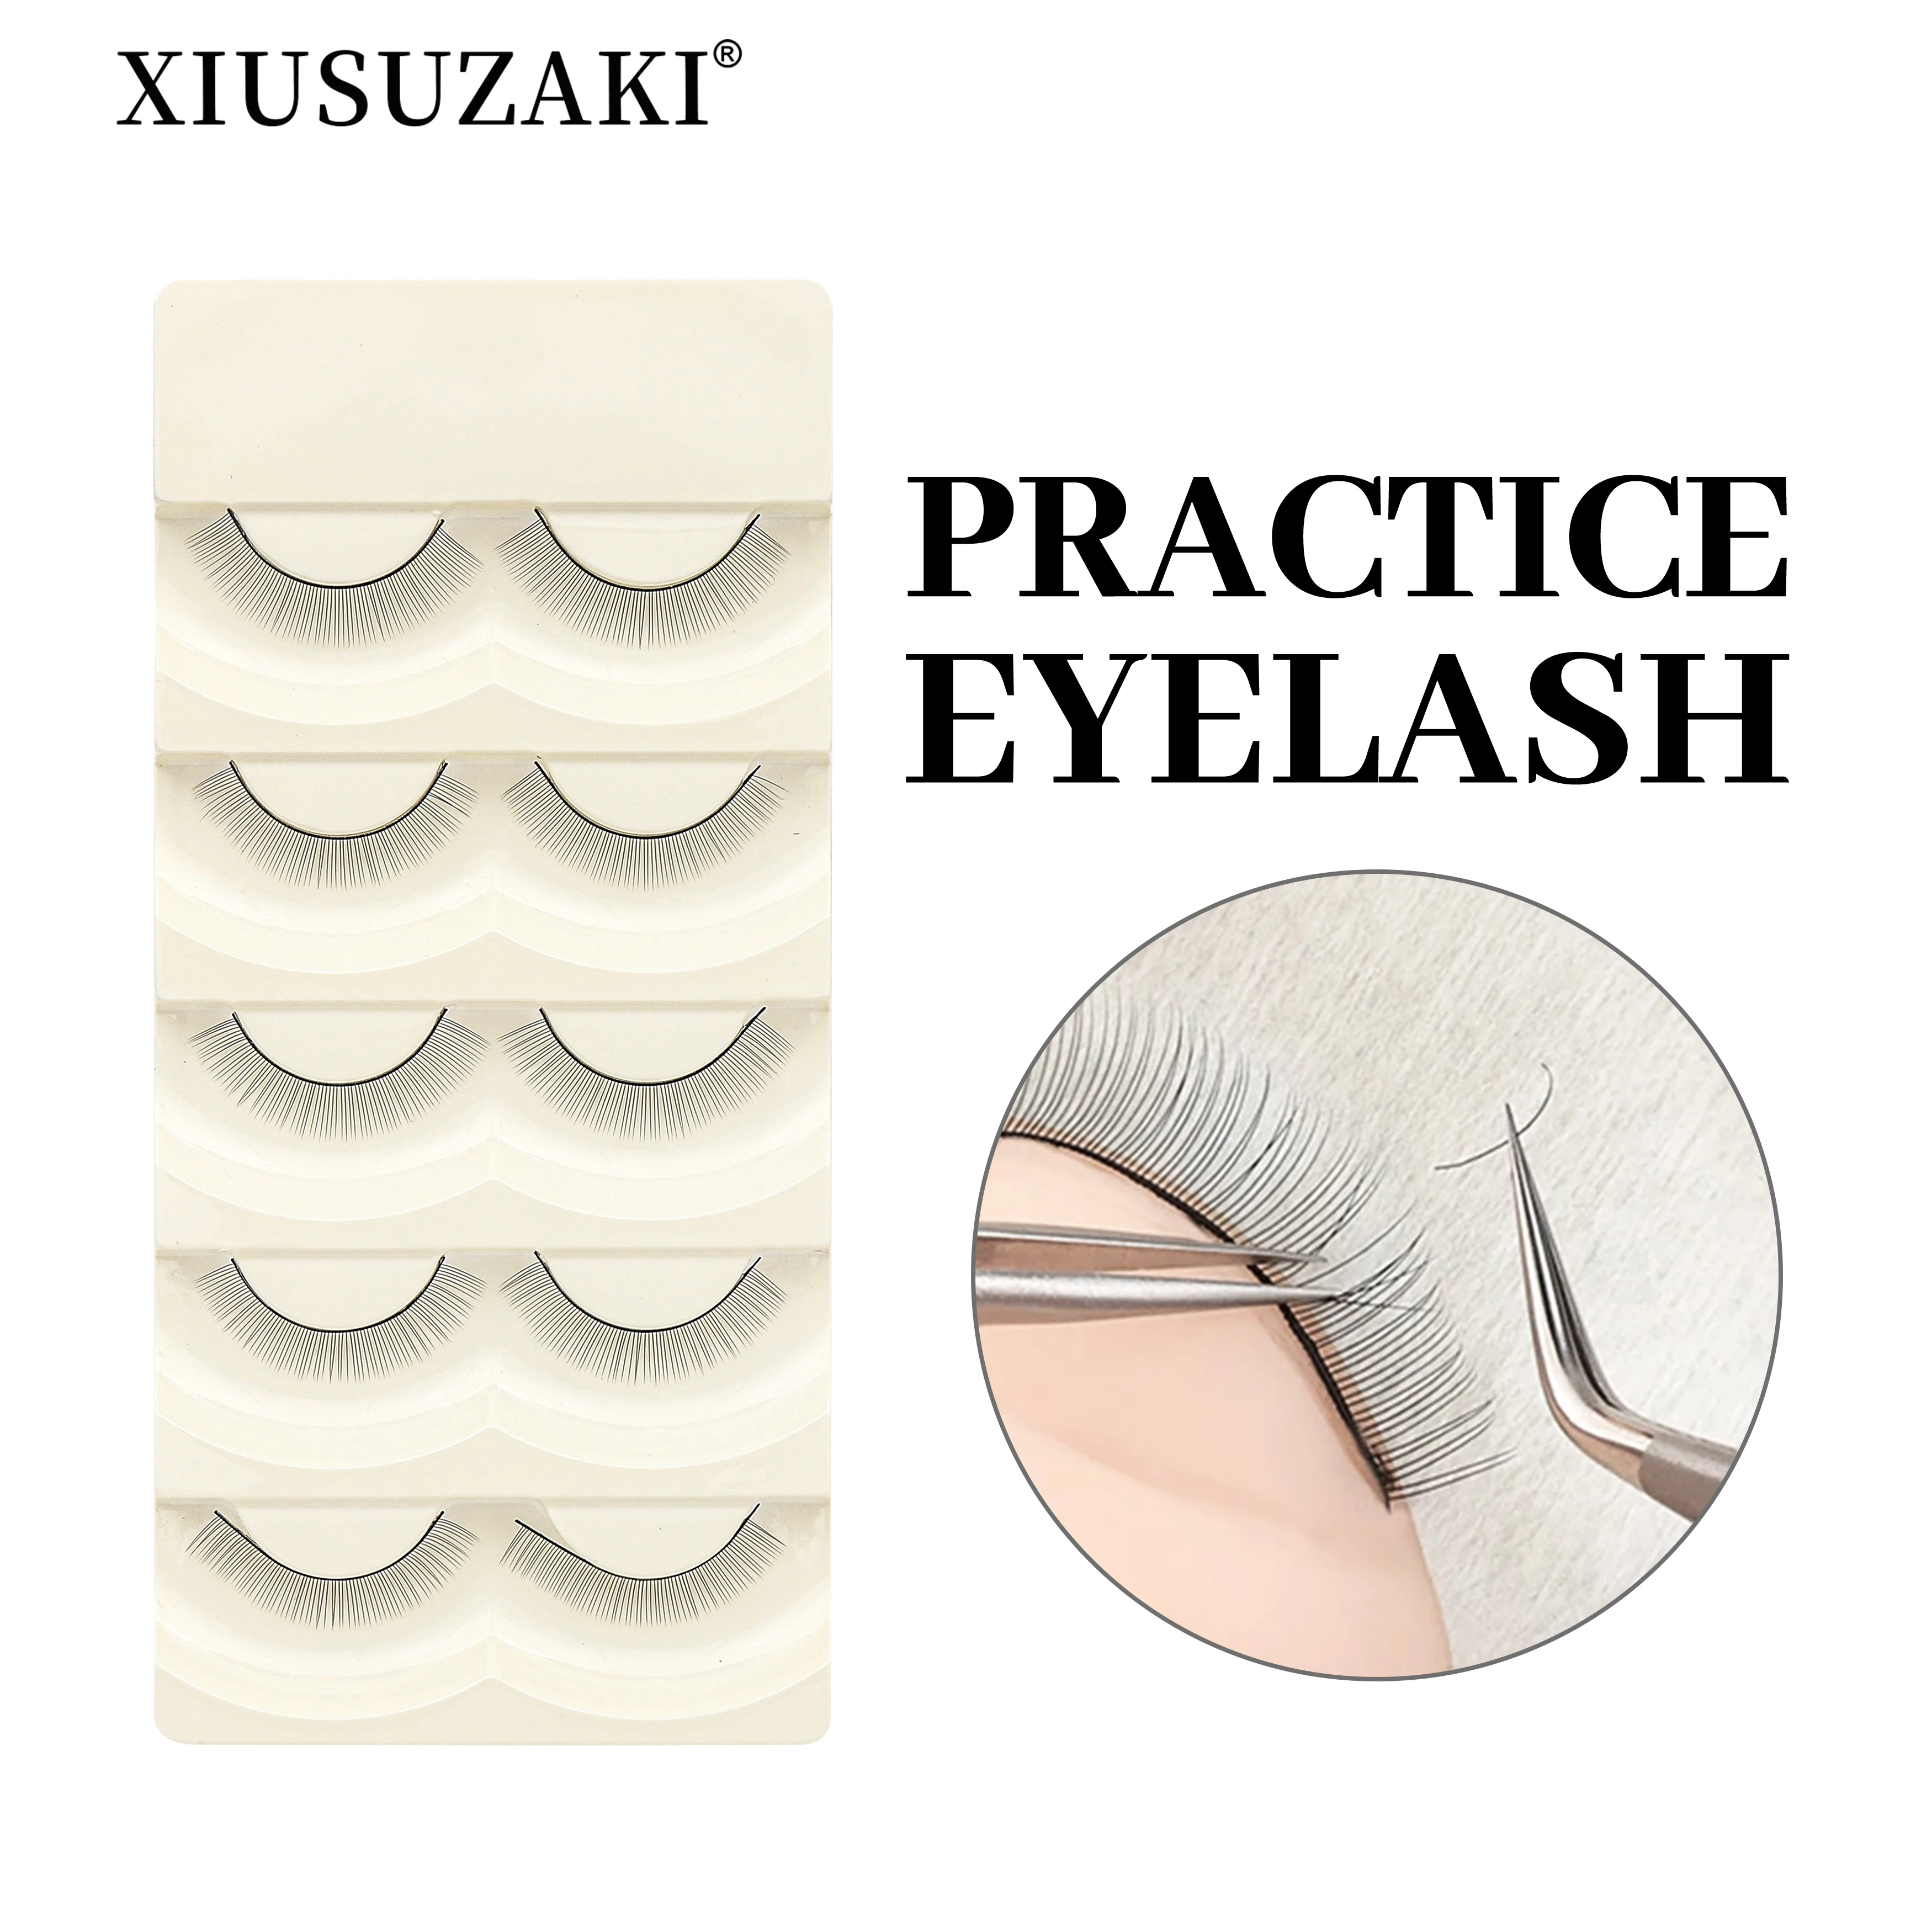 

XIUSUZAKI 10 Trays Set False Eyelashes Handmade Training Lashes For Beginners Eyelash Extensions Beauty Salon Student Practice